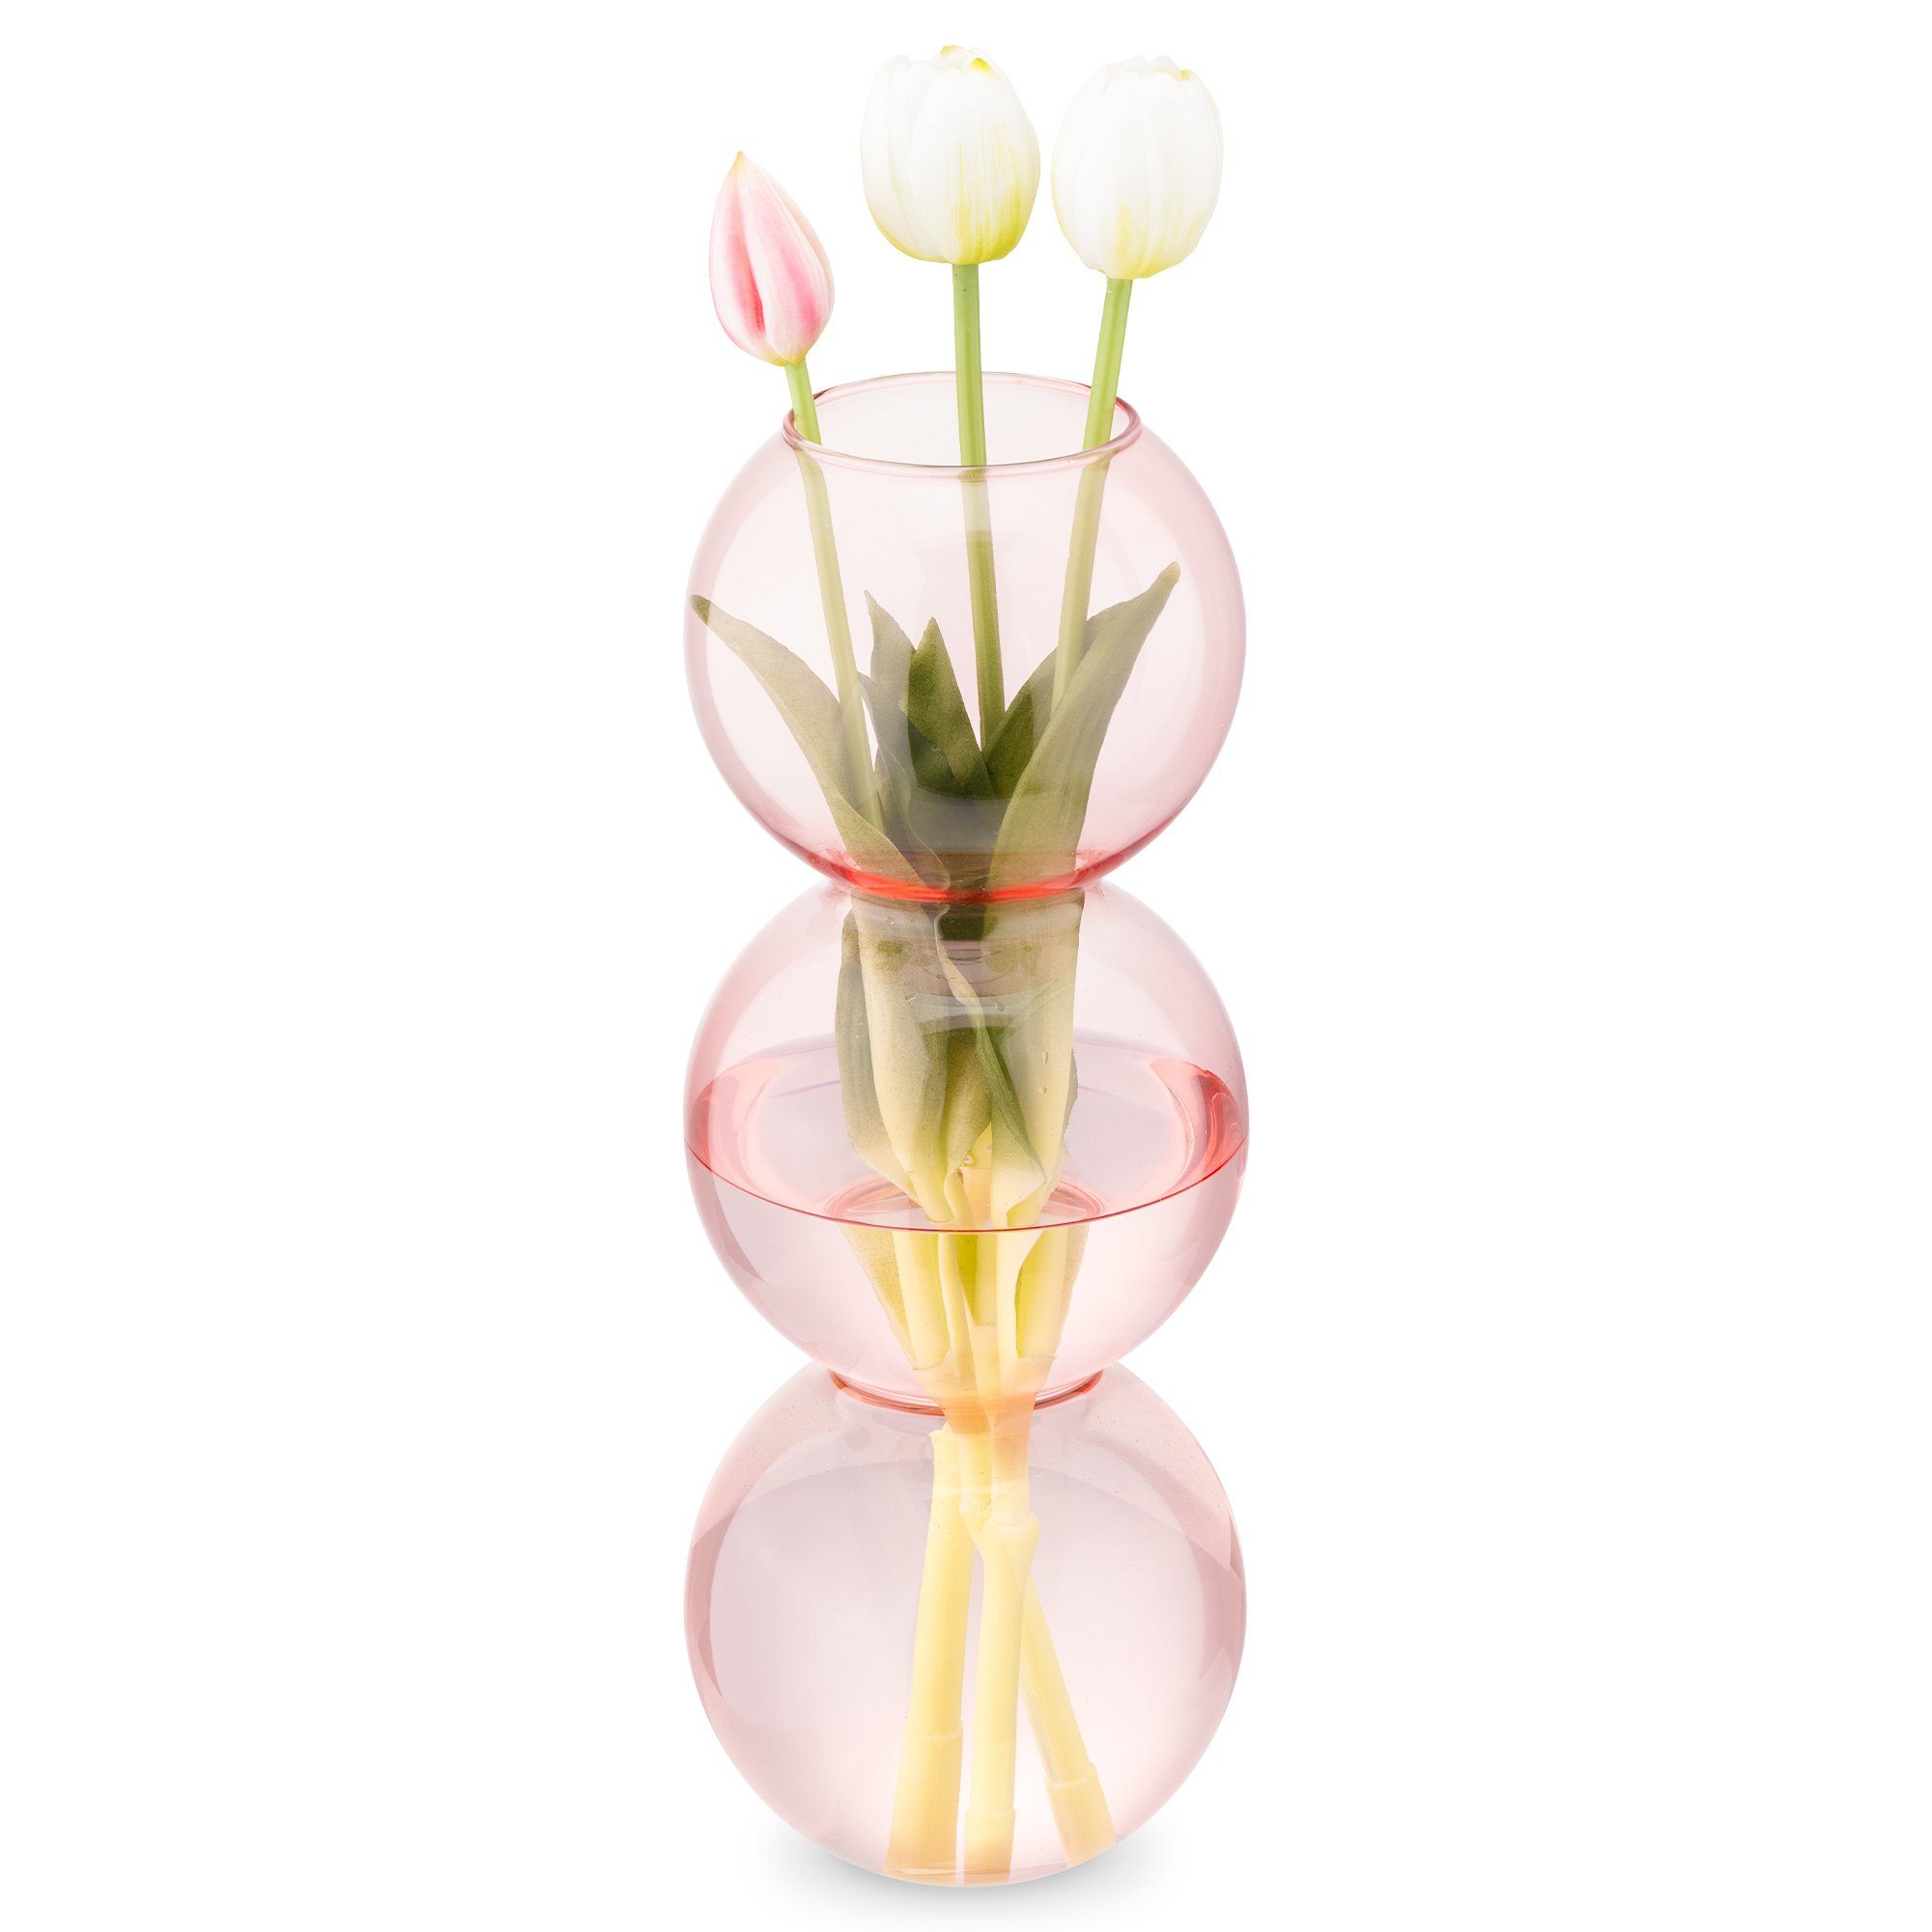 Navaris Dekovase Deko Vase modern rosa - Wohnzimmer Blumenvase - Glasvase Blasenform